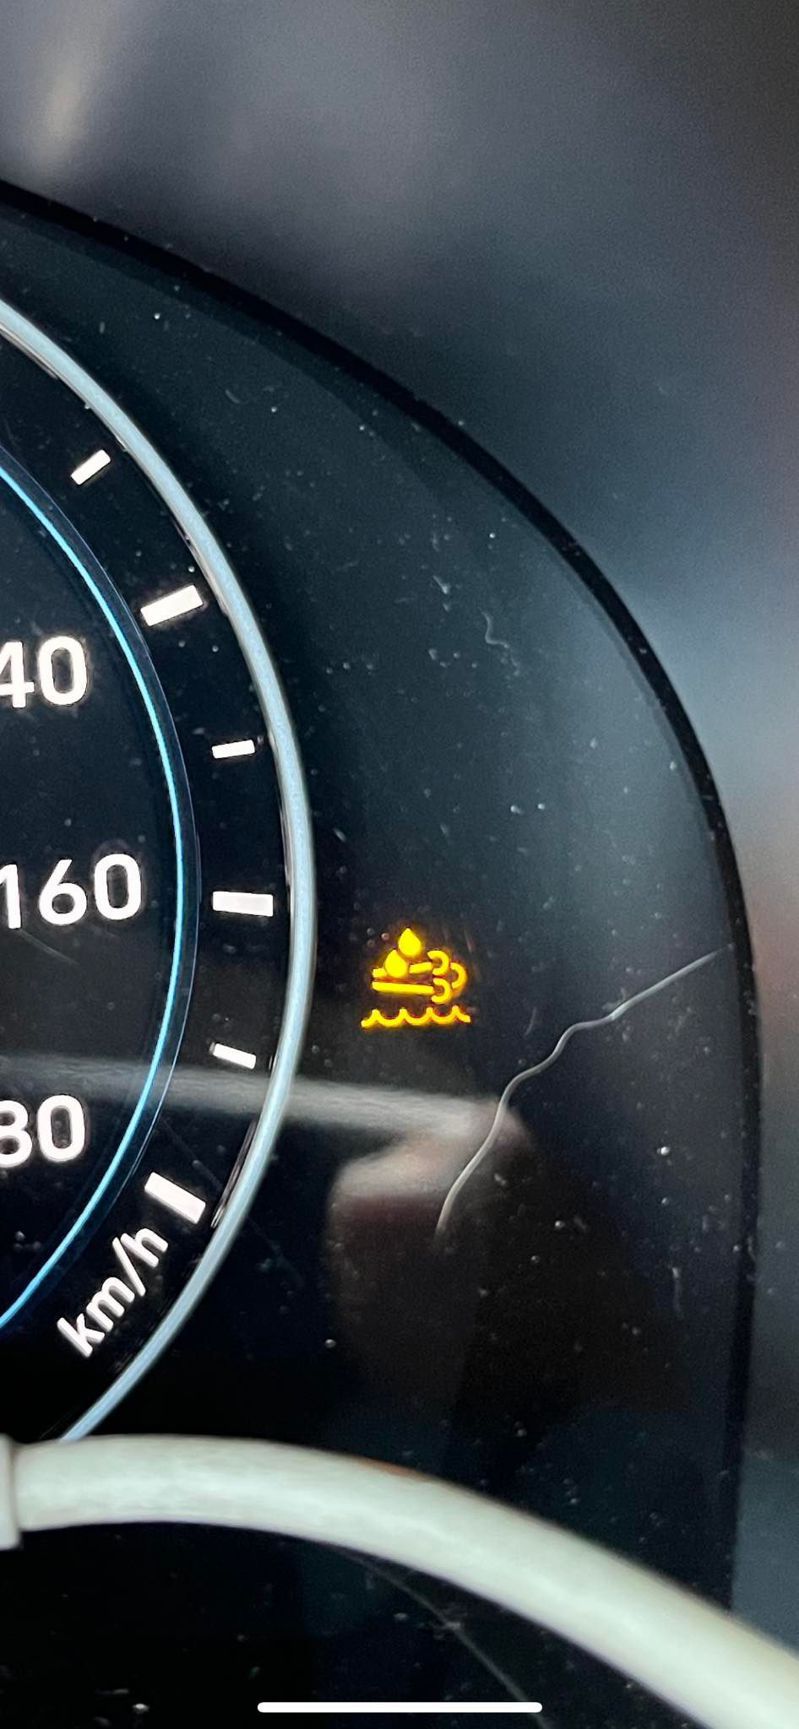 有網友在汽車儀表板上看到一個「神秘符號」，令他相當疑惑，於是想問問網友們，「這是什麼燈啊？」，此文一出，吸引不少網友熱烈討論。圖／爆廢公社